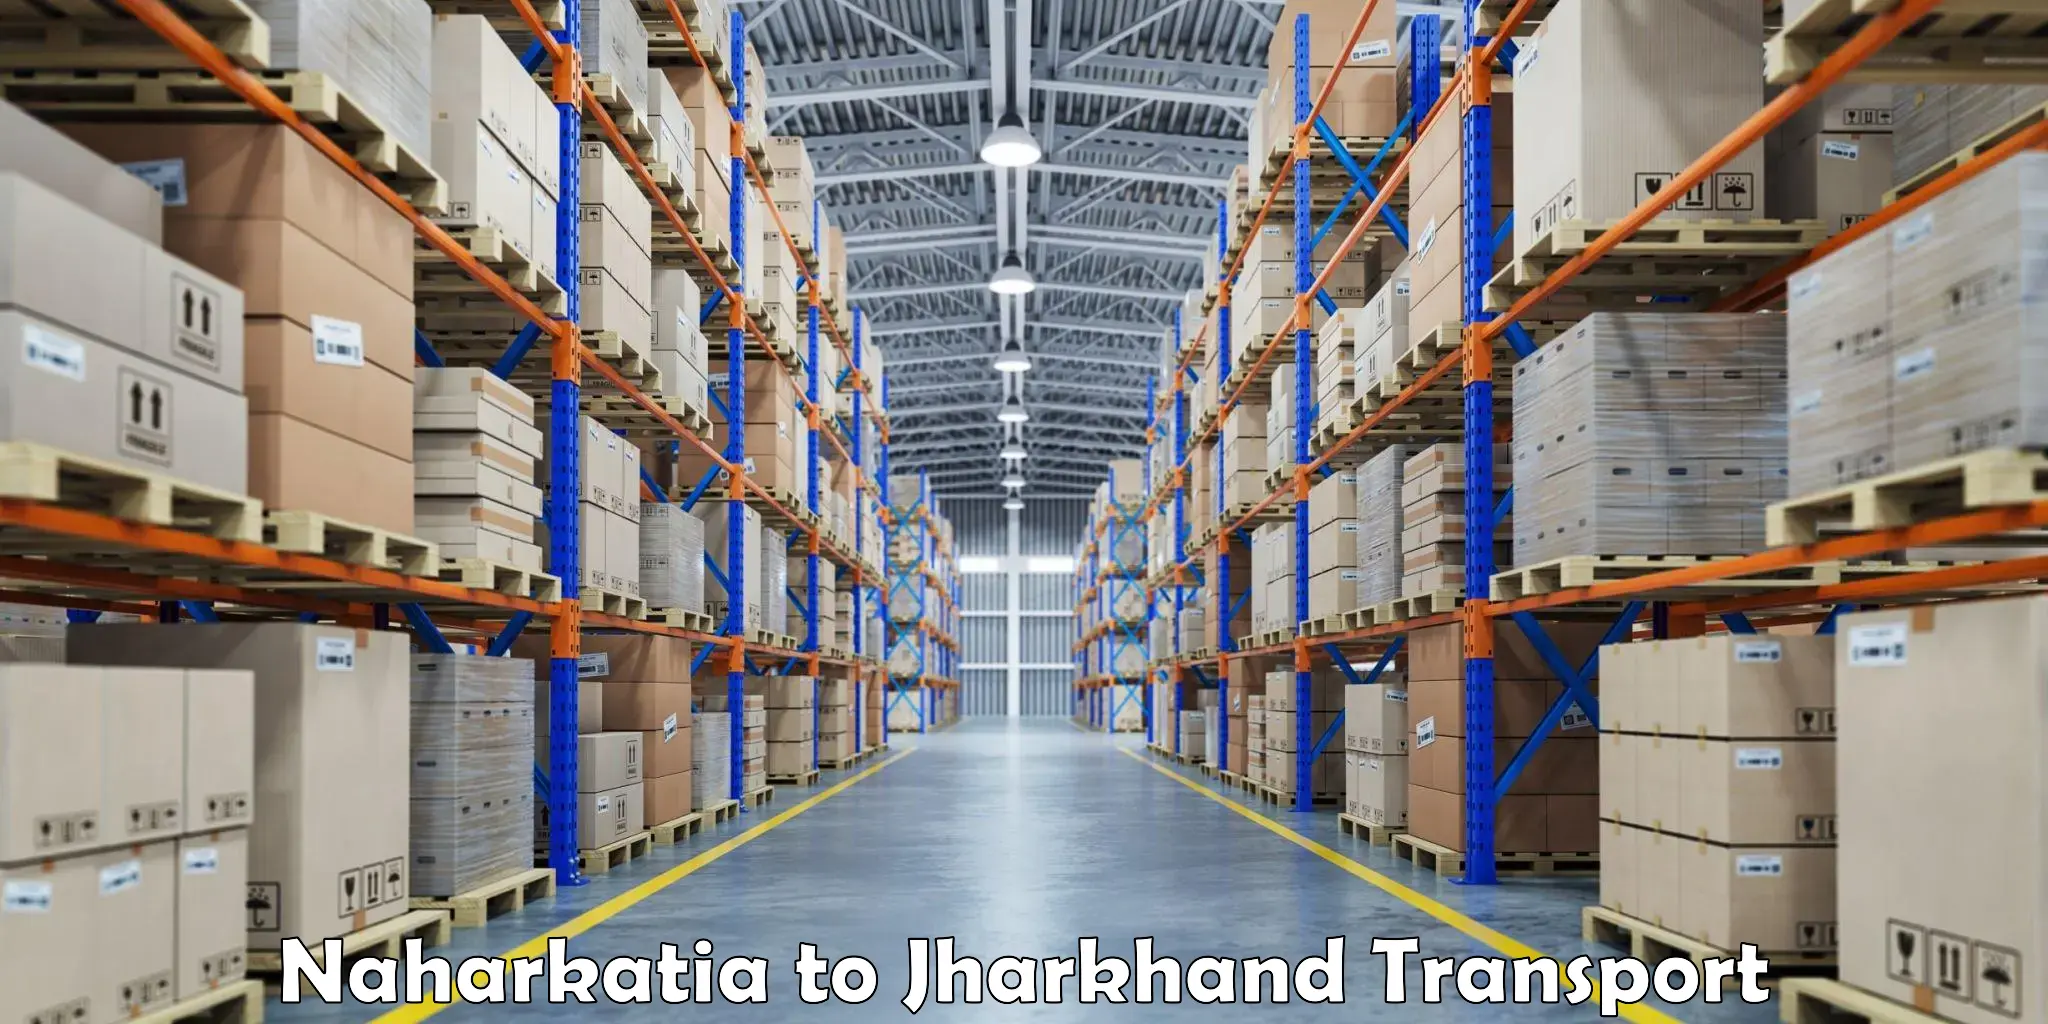 Daily transport service Naharkatia to Jharkhand